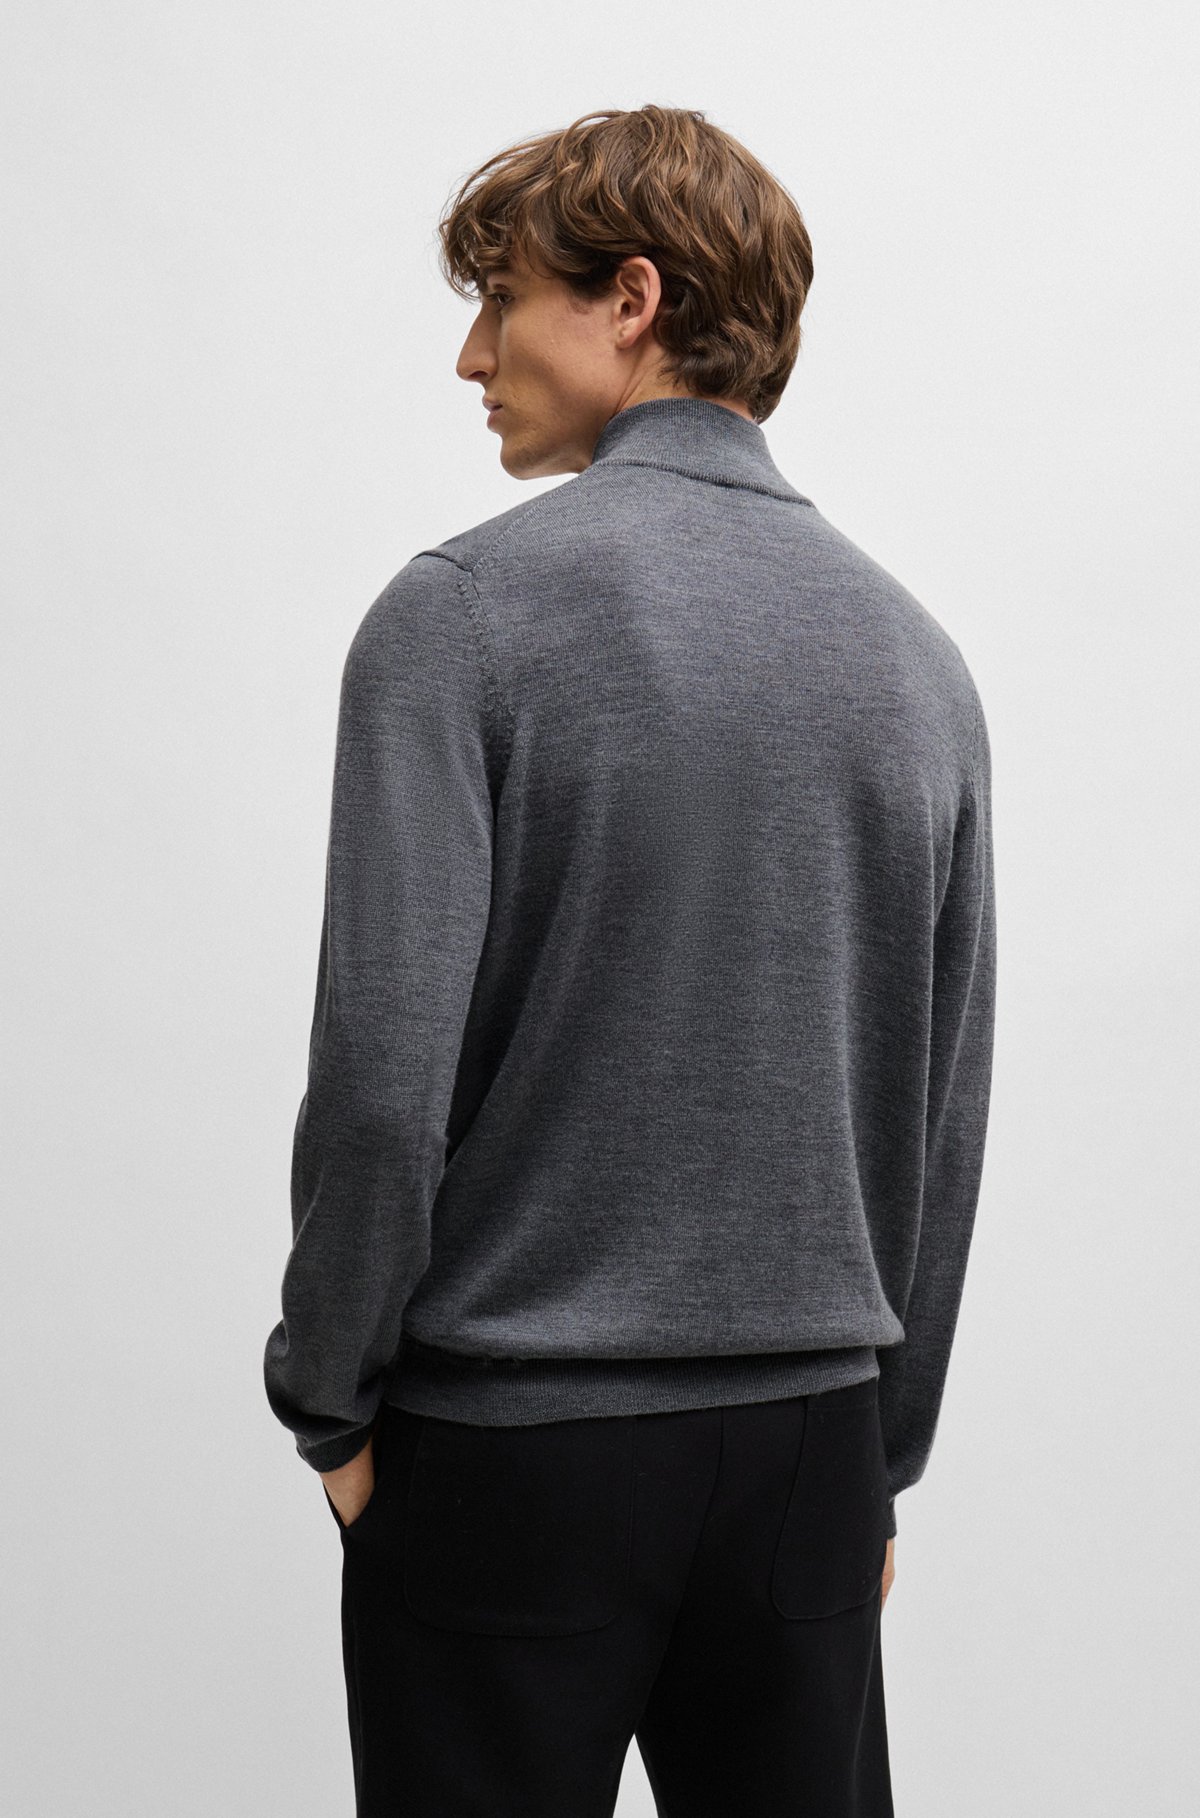 Neerduwen mooi Wederzijds BOSS - Slim-fit sweater in extra-fine merino wool